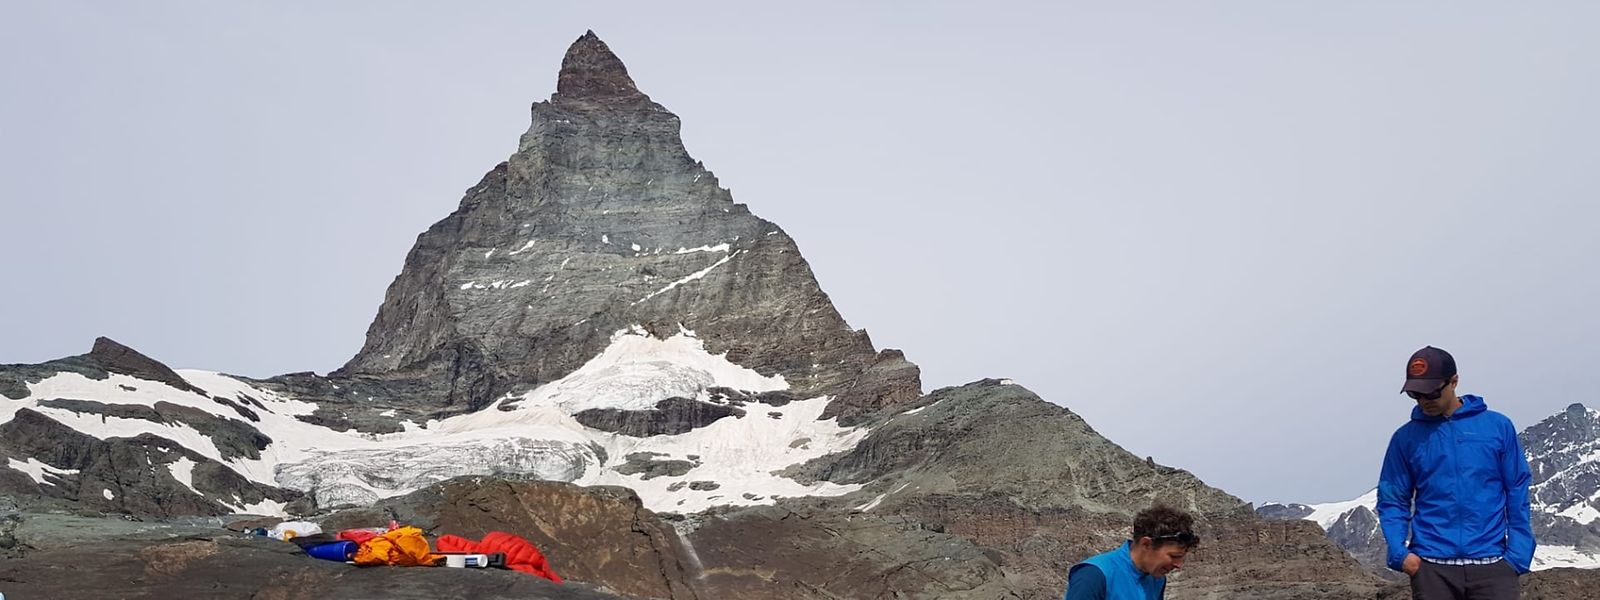 Schweiz, Matterhorn: Wissenschaftler arbeiten bei der Installation eines Seismiksensors im Gletschervorfeld des Matterhorns.